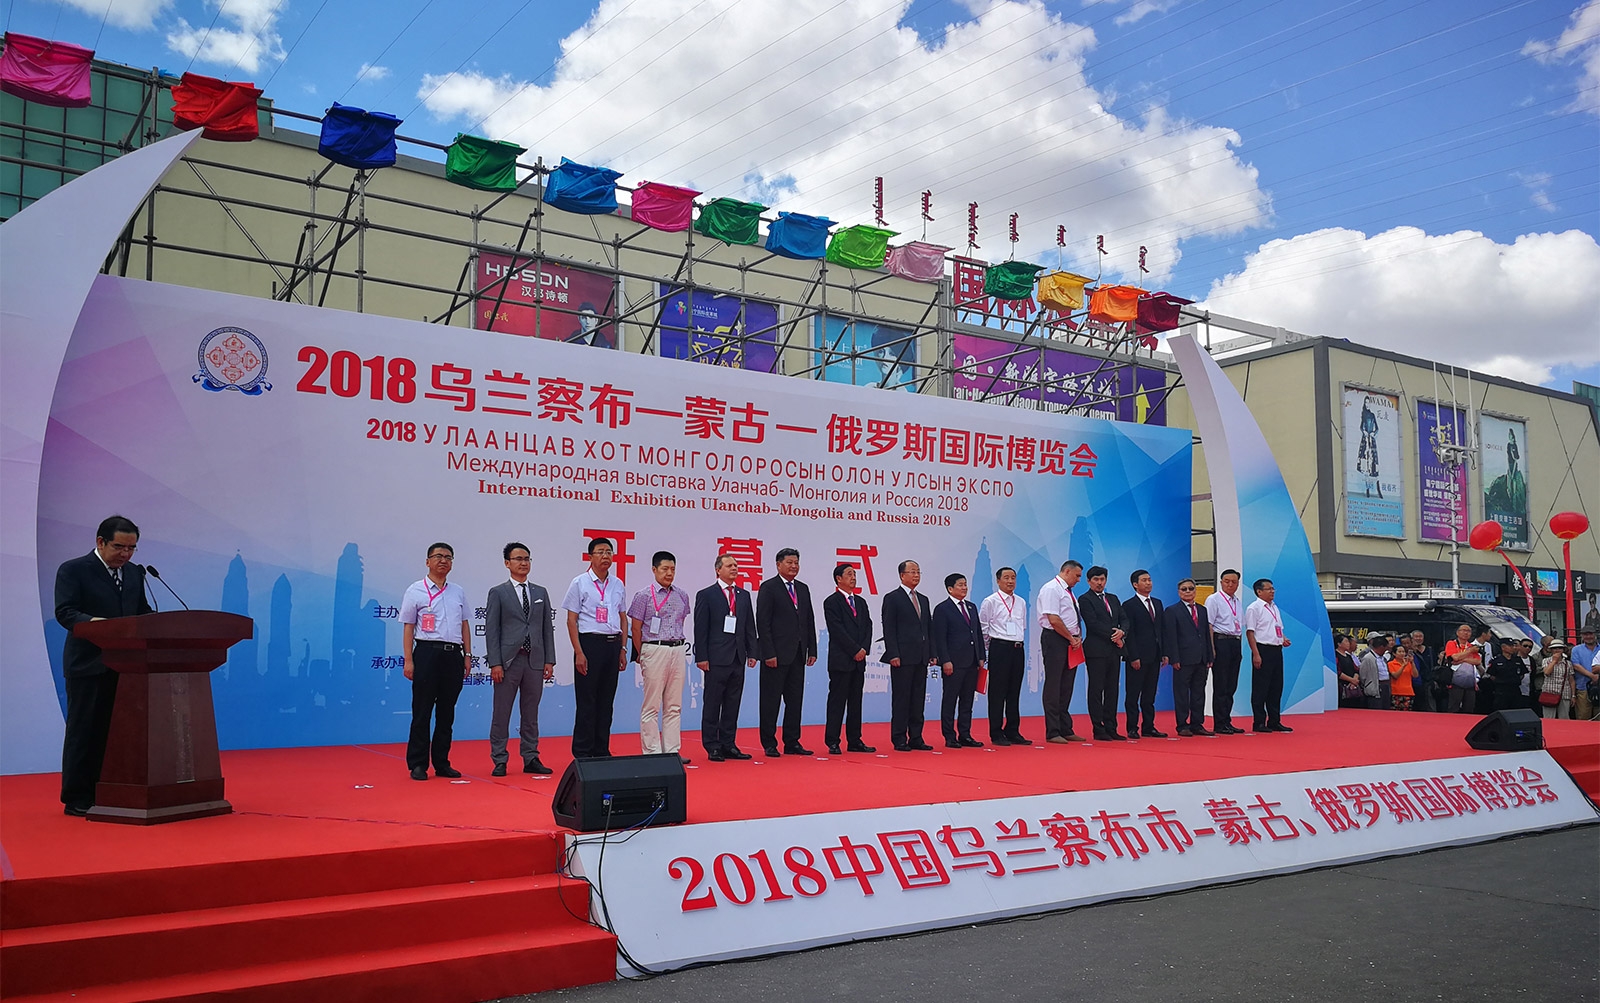 2018烏蘭察布—蒙古—俄羅斯國際博覽會開幕28日上午，“2018烏蘭察布—蒙古—俄羅斯國際博覽會”在烏蘭察布市開幕。此次博覽會的主題是“開放交流·合作共贏”。